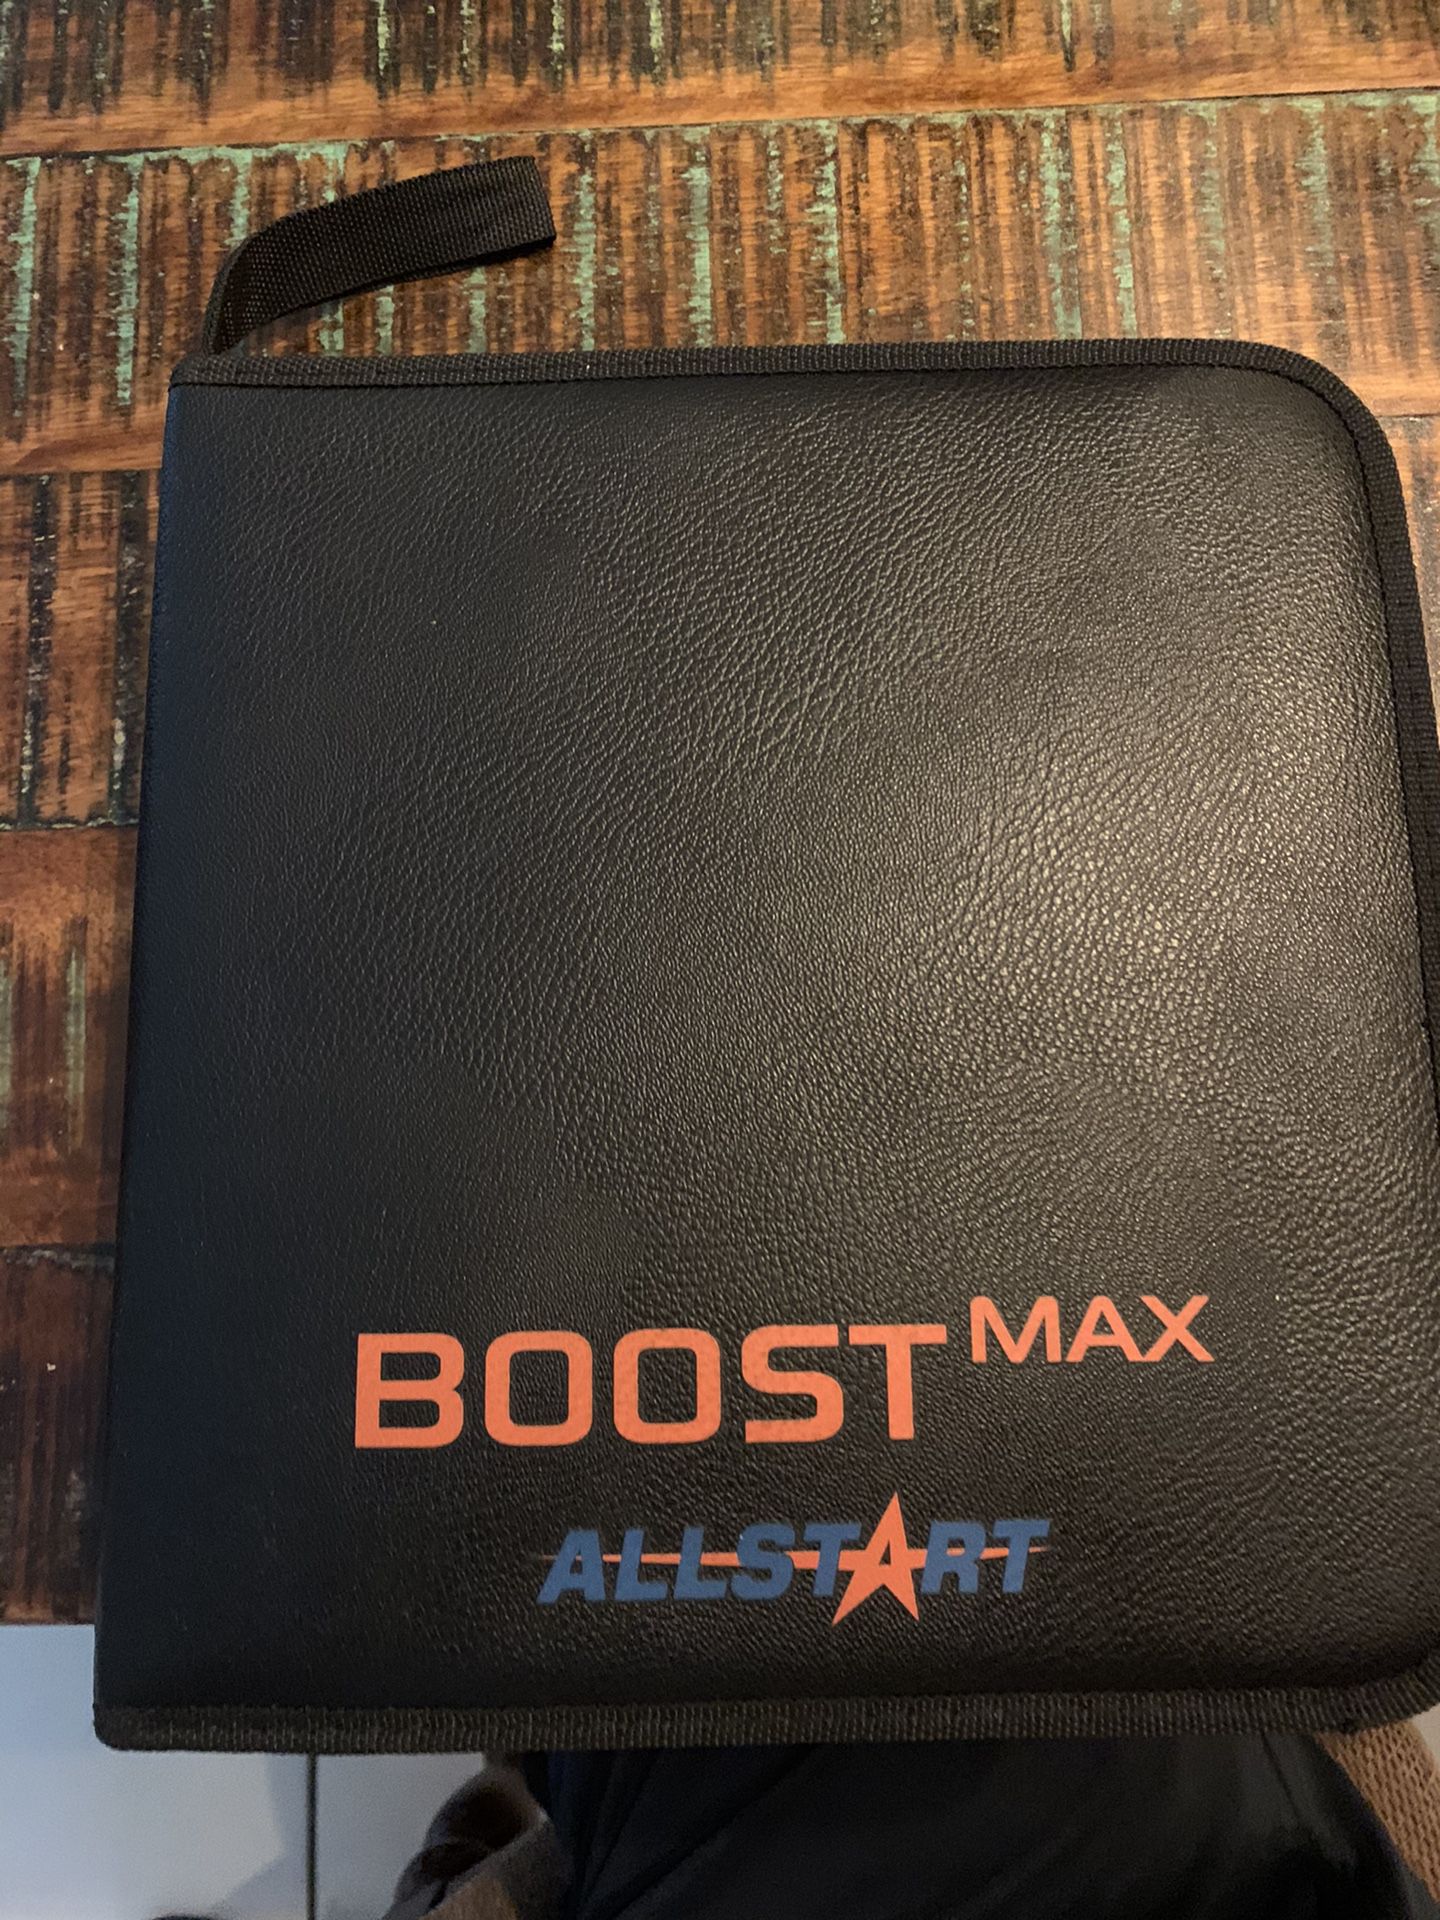 Boost max all start 560